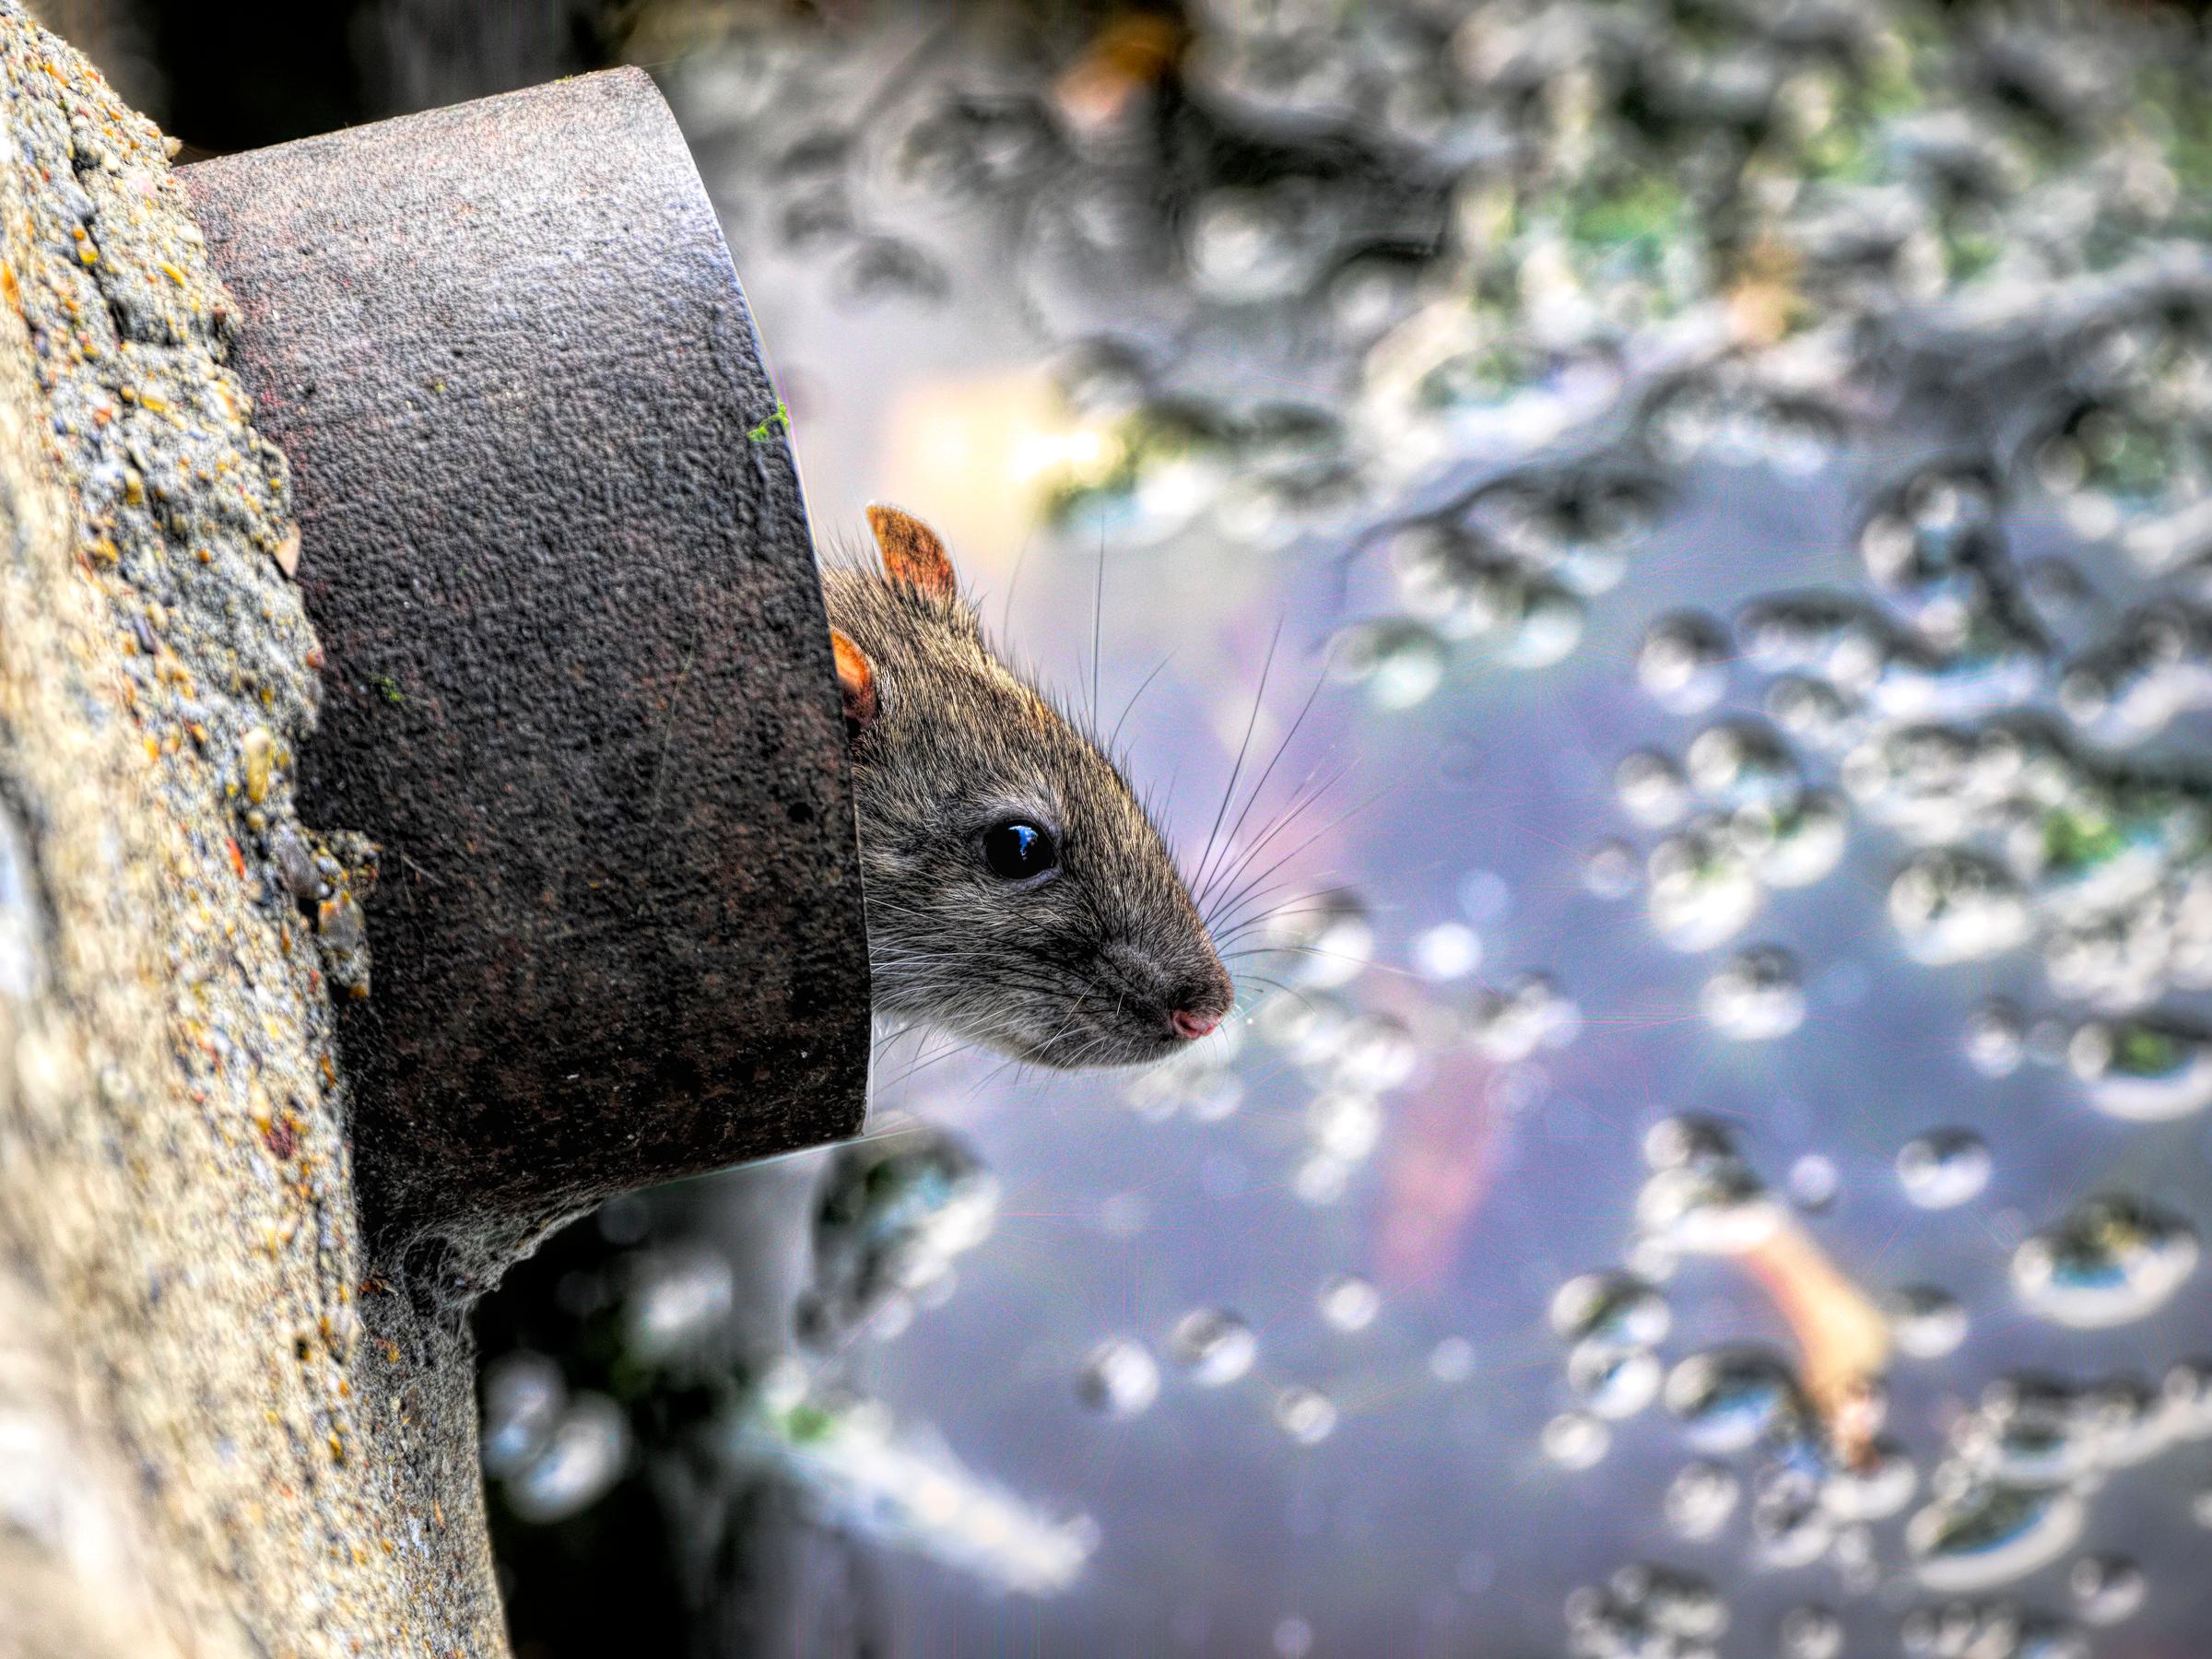 Install a rat blocker and avoid intruders